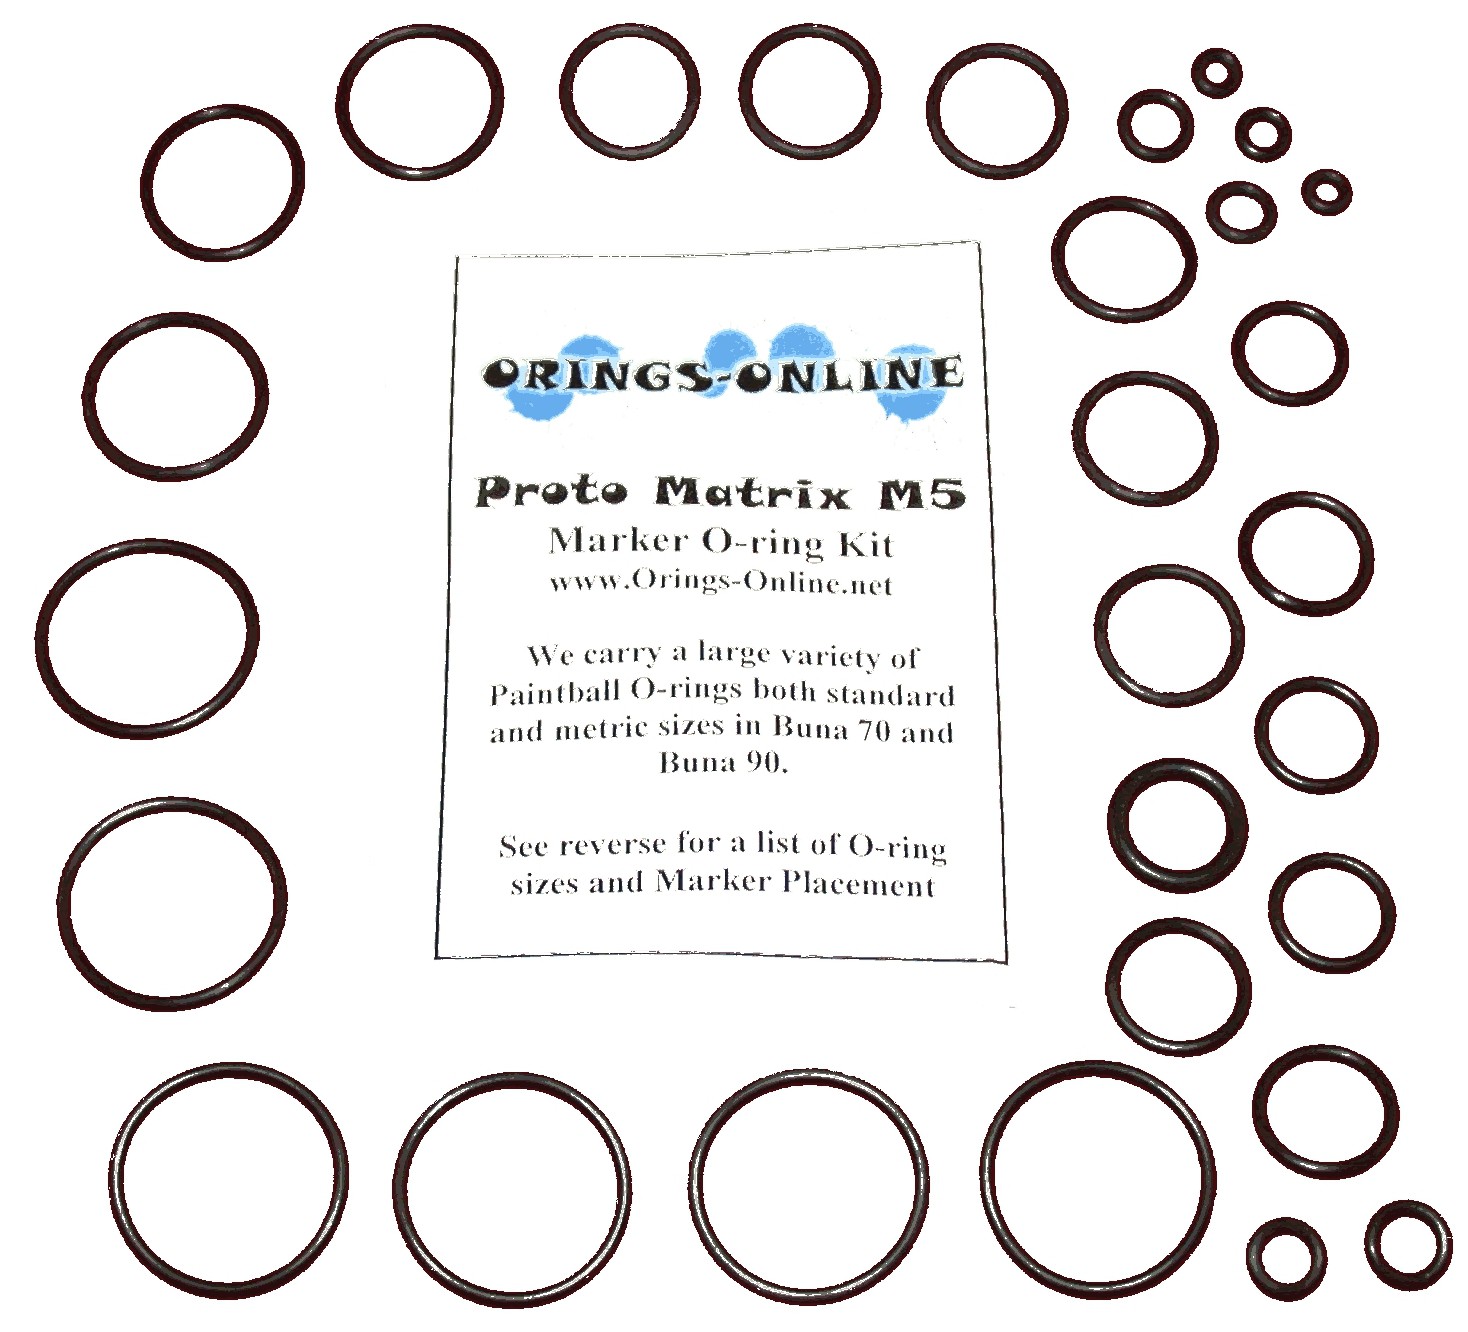 Proto Matrix M5 O-ring Kit